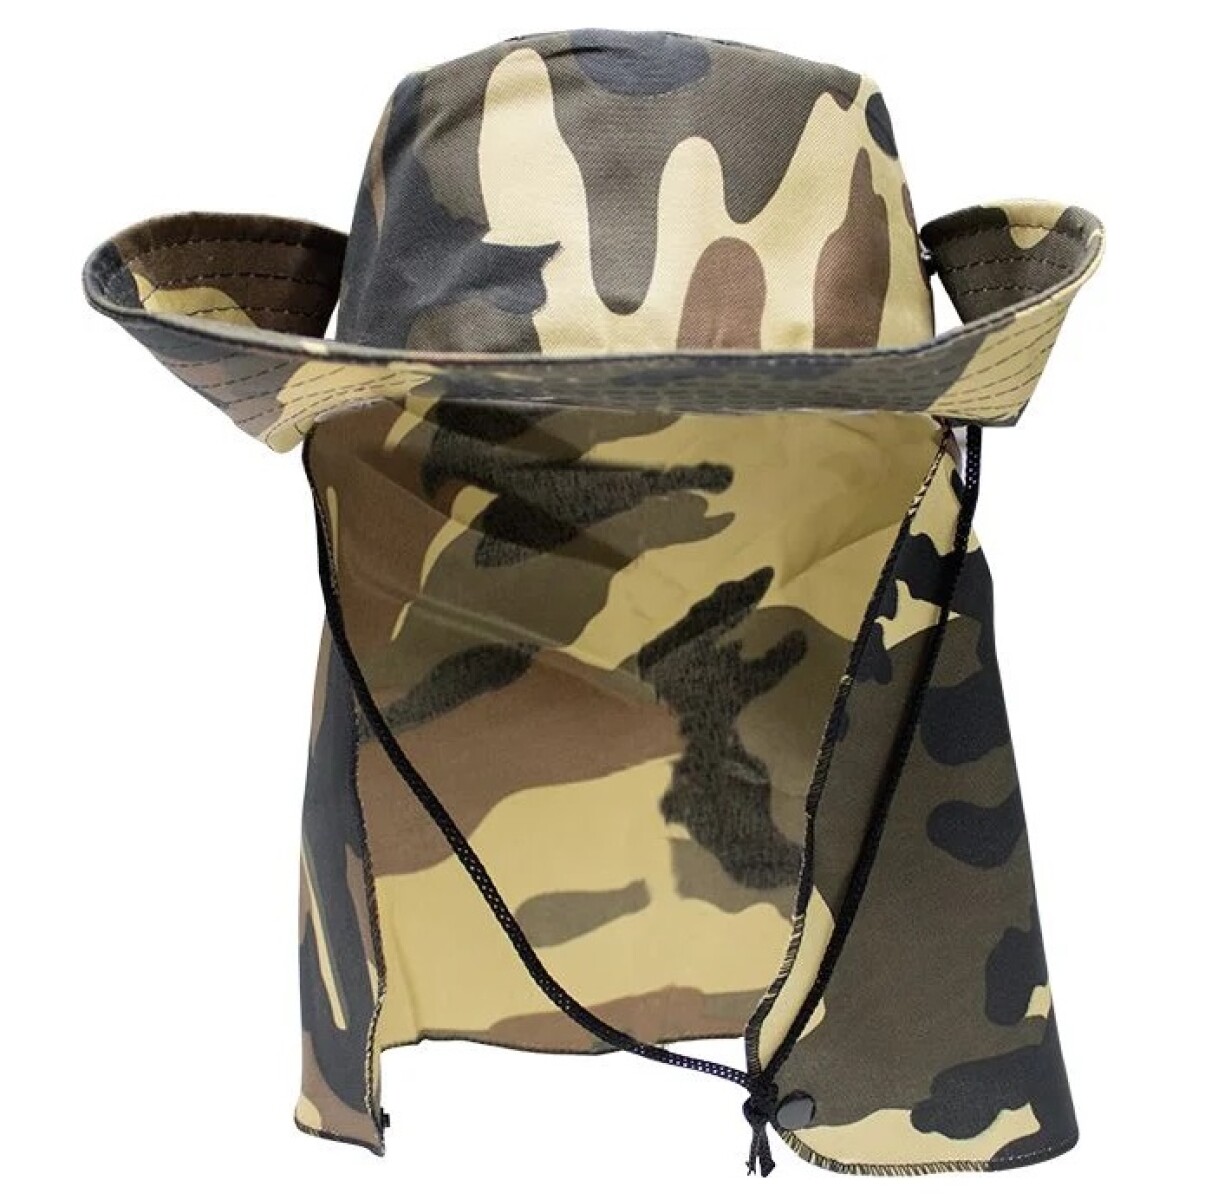 Sombrero de pescador con cubrenuca y protección UV50+ KING BRASIL - Camo caqui 